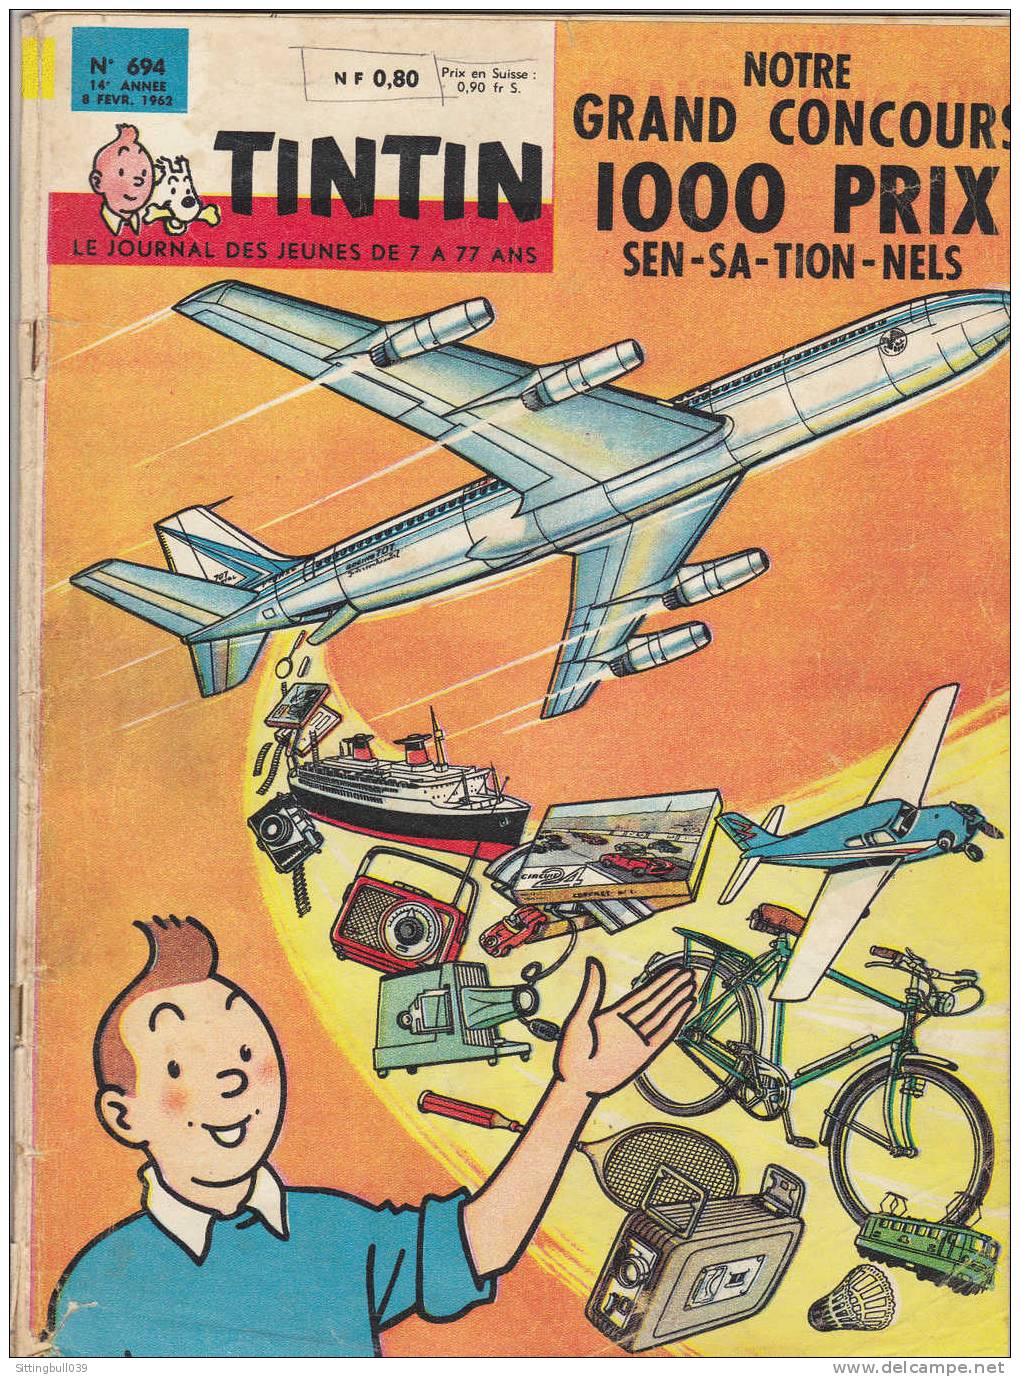 TINTIN N° 694 Du 8 Fév. 1962. Tintin, En 1ère De Couv., Présente Un Grand Concours 1000 Prix : Avion, Train, Bateau, Etc - Tintin